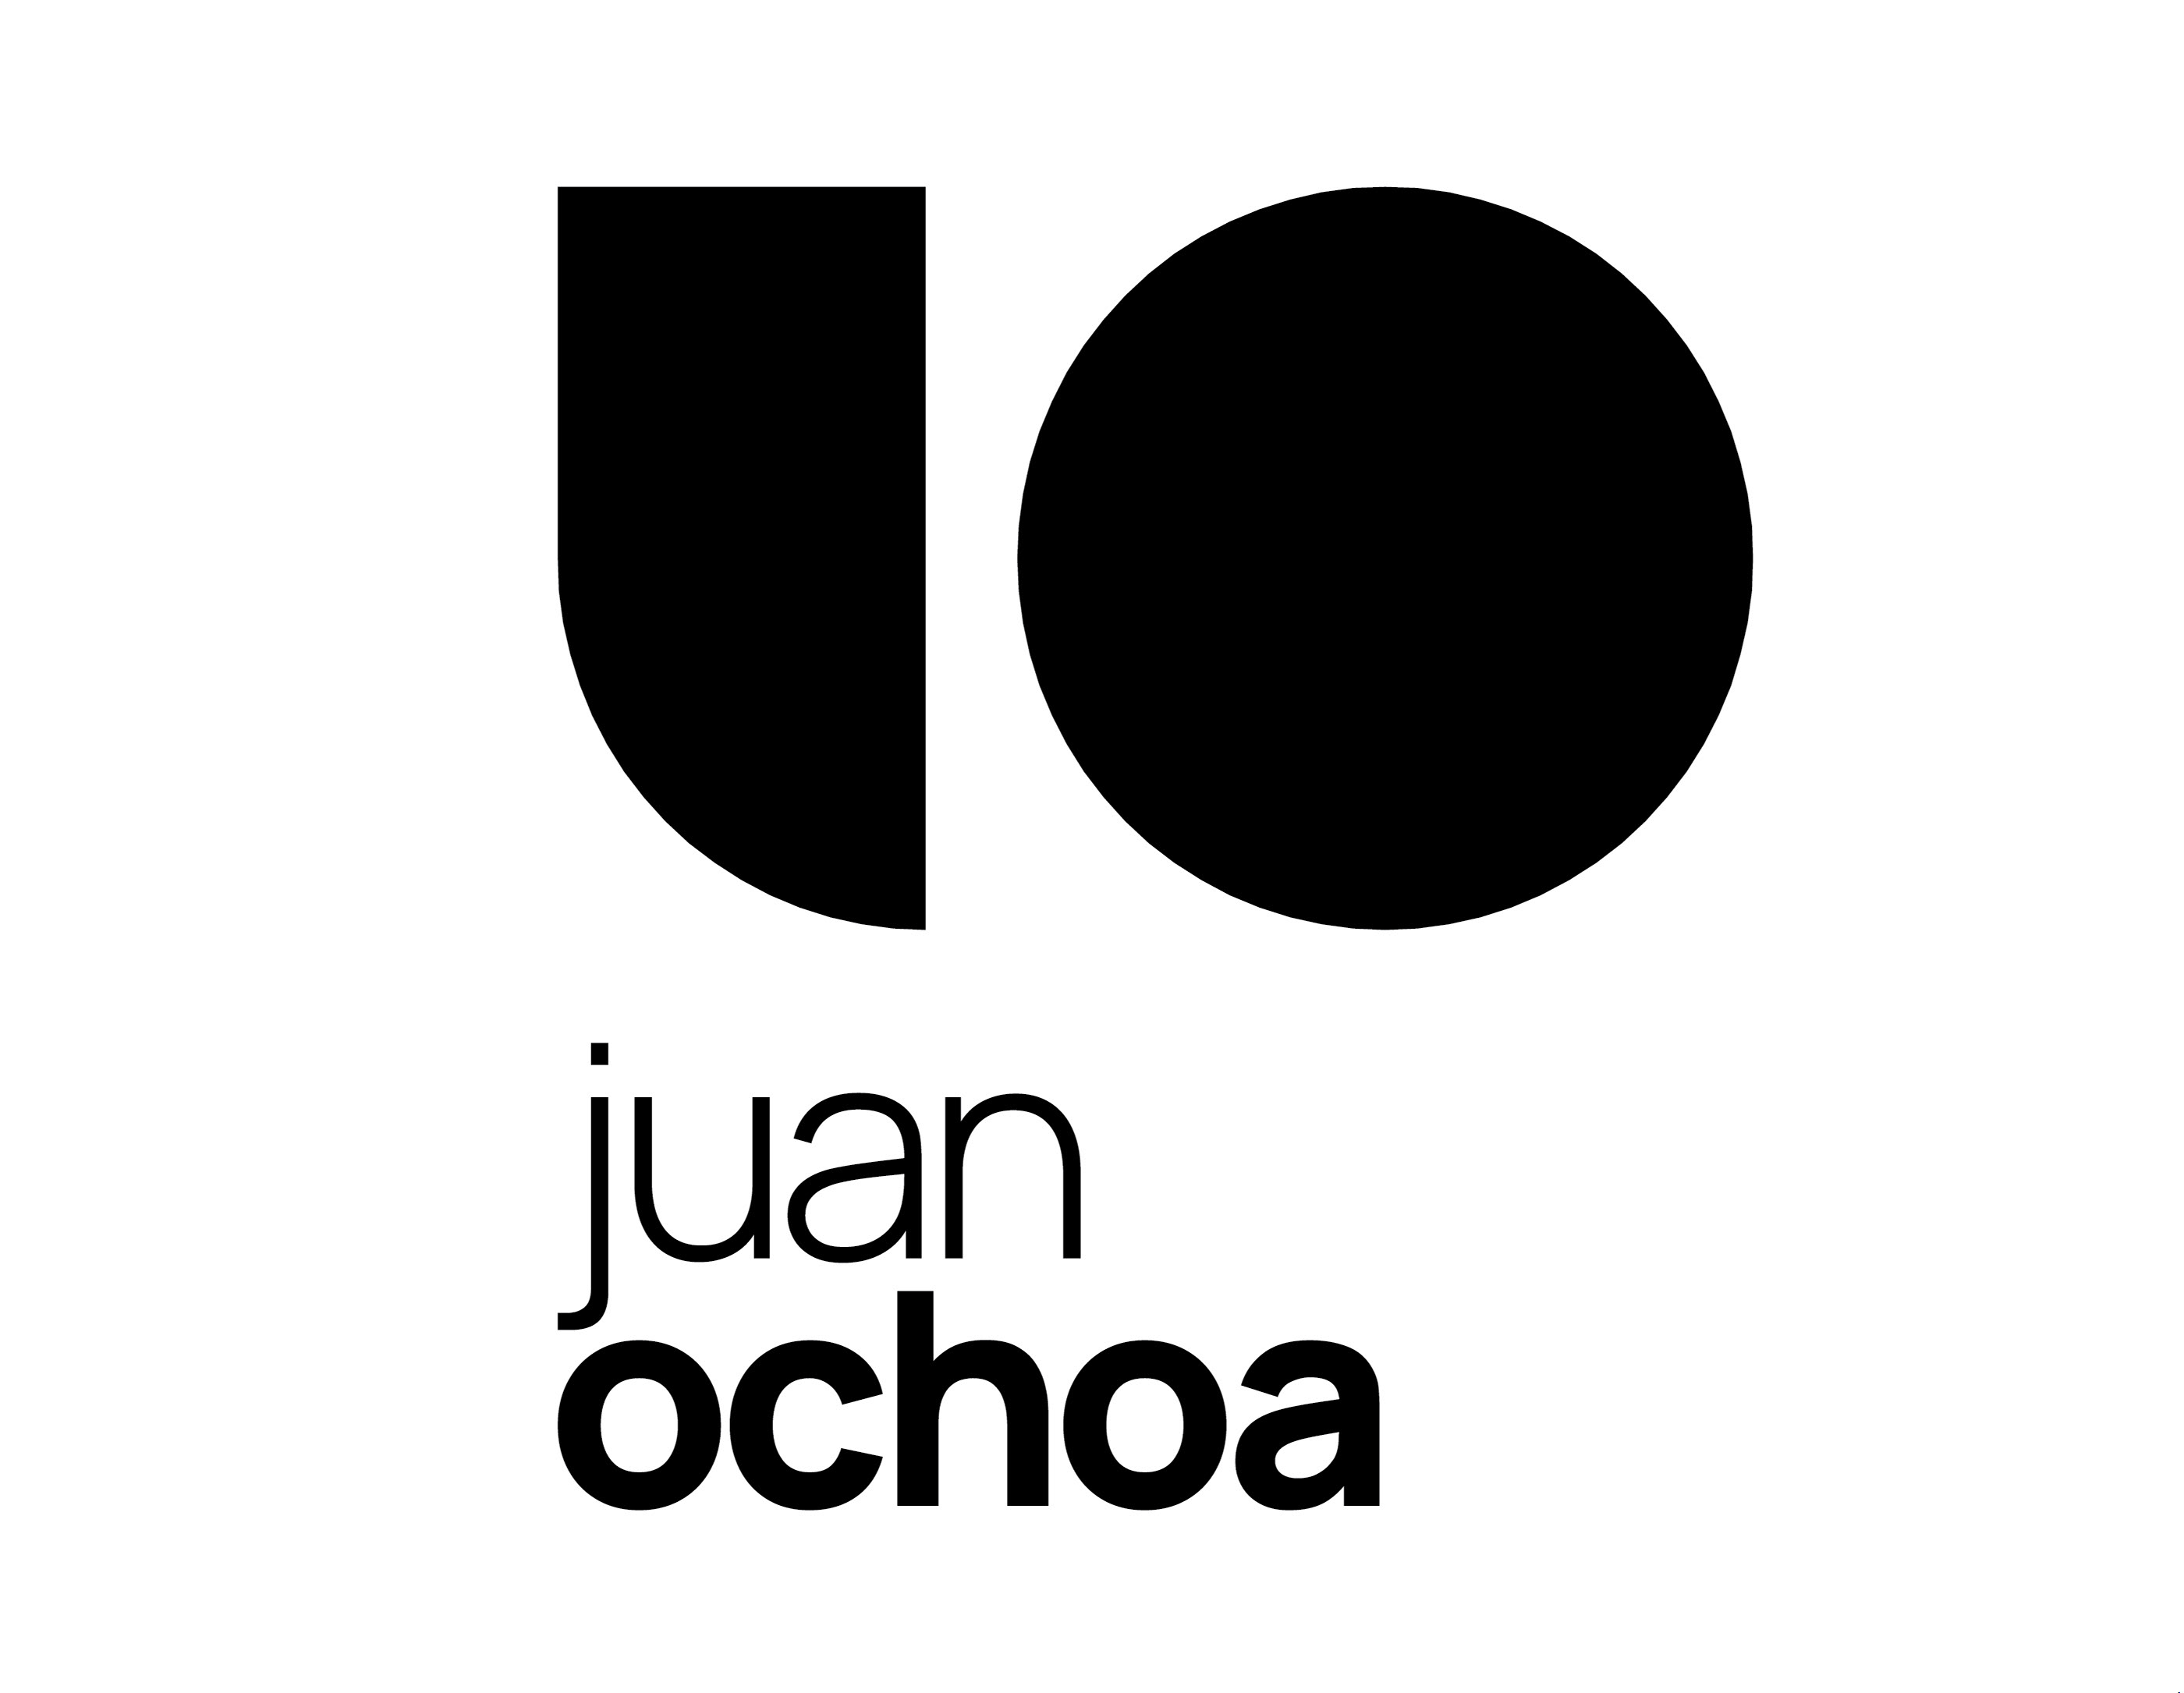 Juan Jose Ochoa